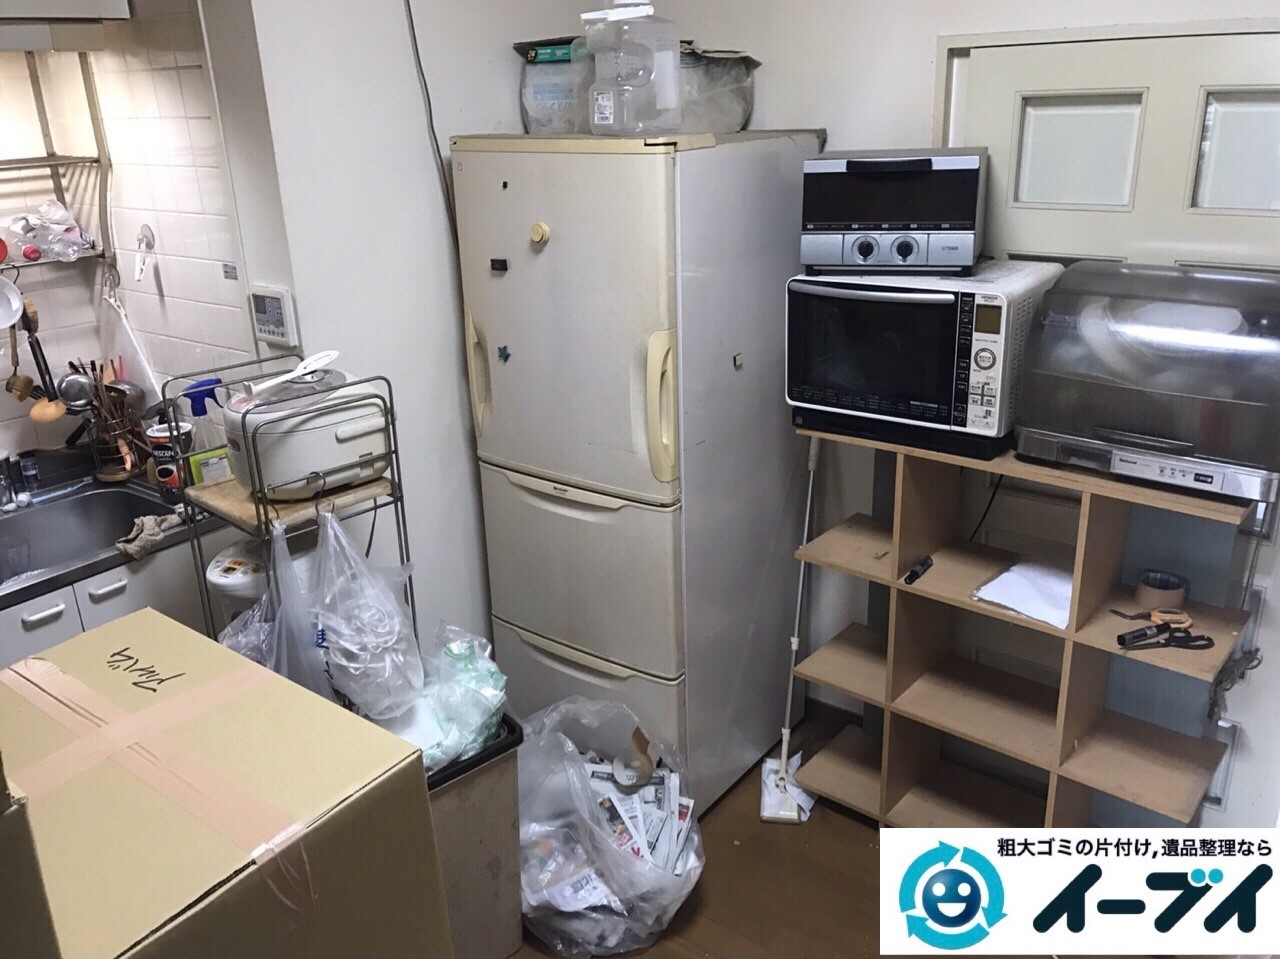 2017年11月27日大阪府大阪市生野区で食器棚や生活用品の粗大ゴミの不用品回収をしました。写真3